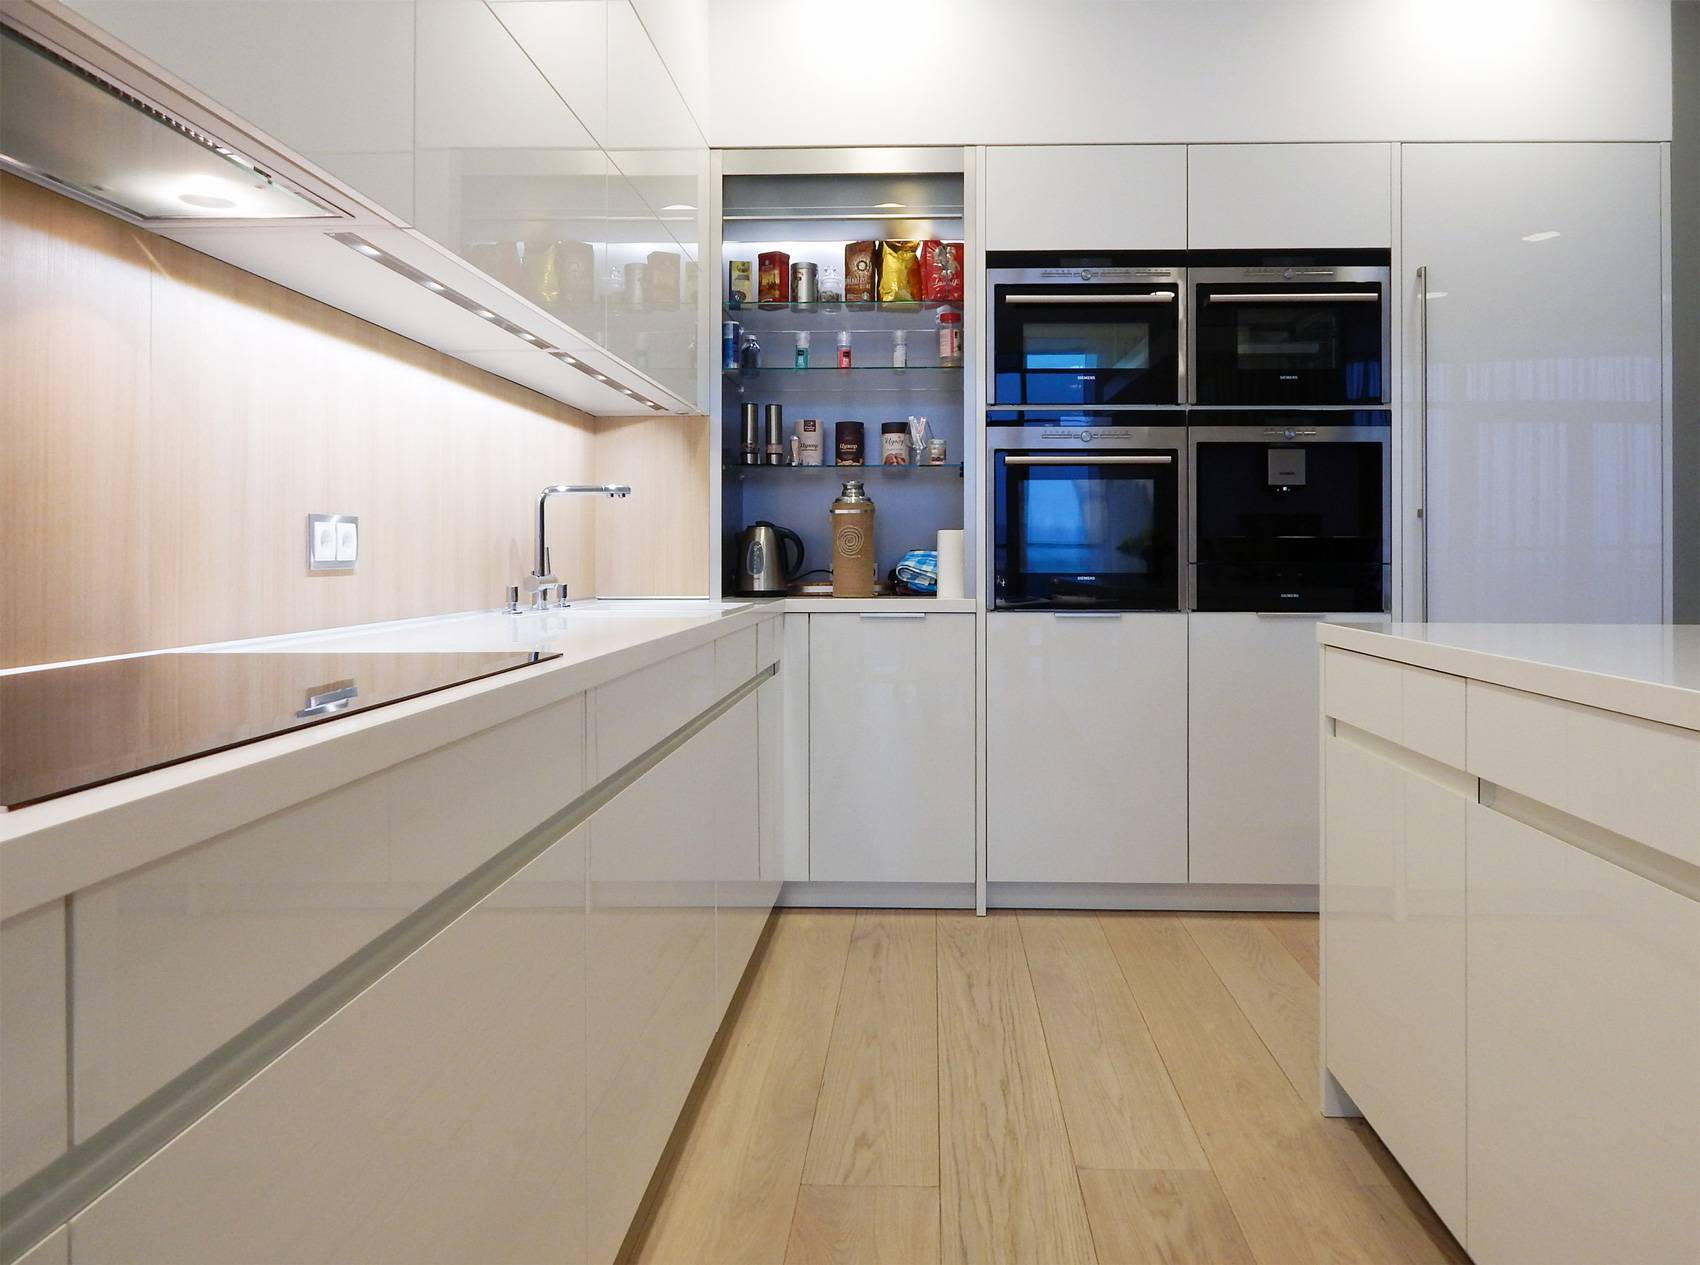 Встраиваемые холодильники – их виды, достоинства и недостатки конструкции